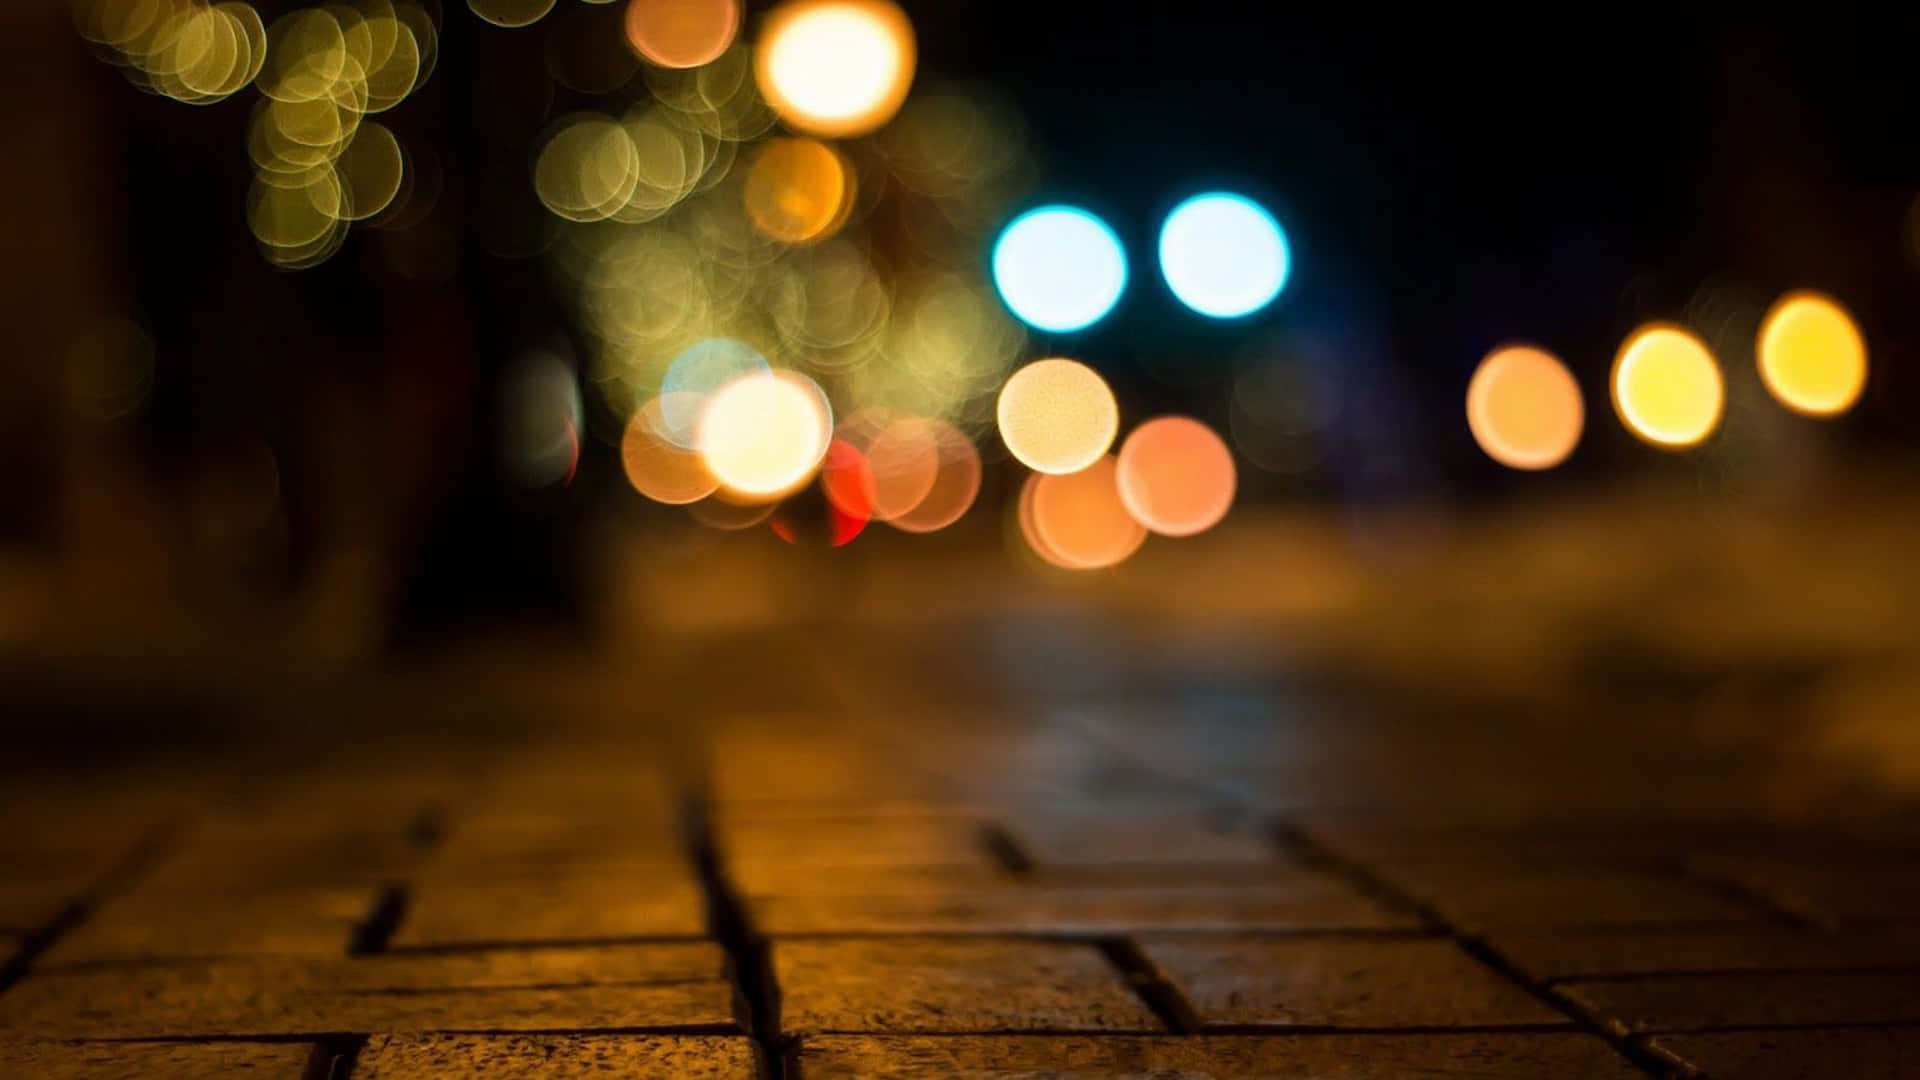 Luzesdesfocadas Em Uma Calçada De Tijolos À Noite